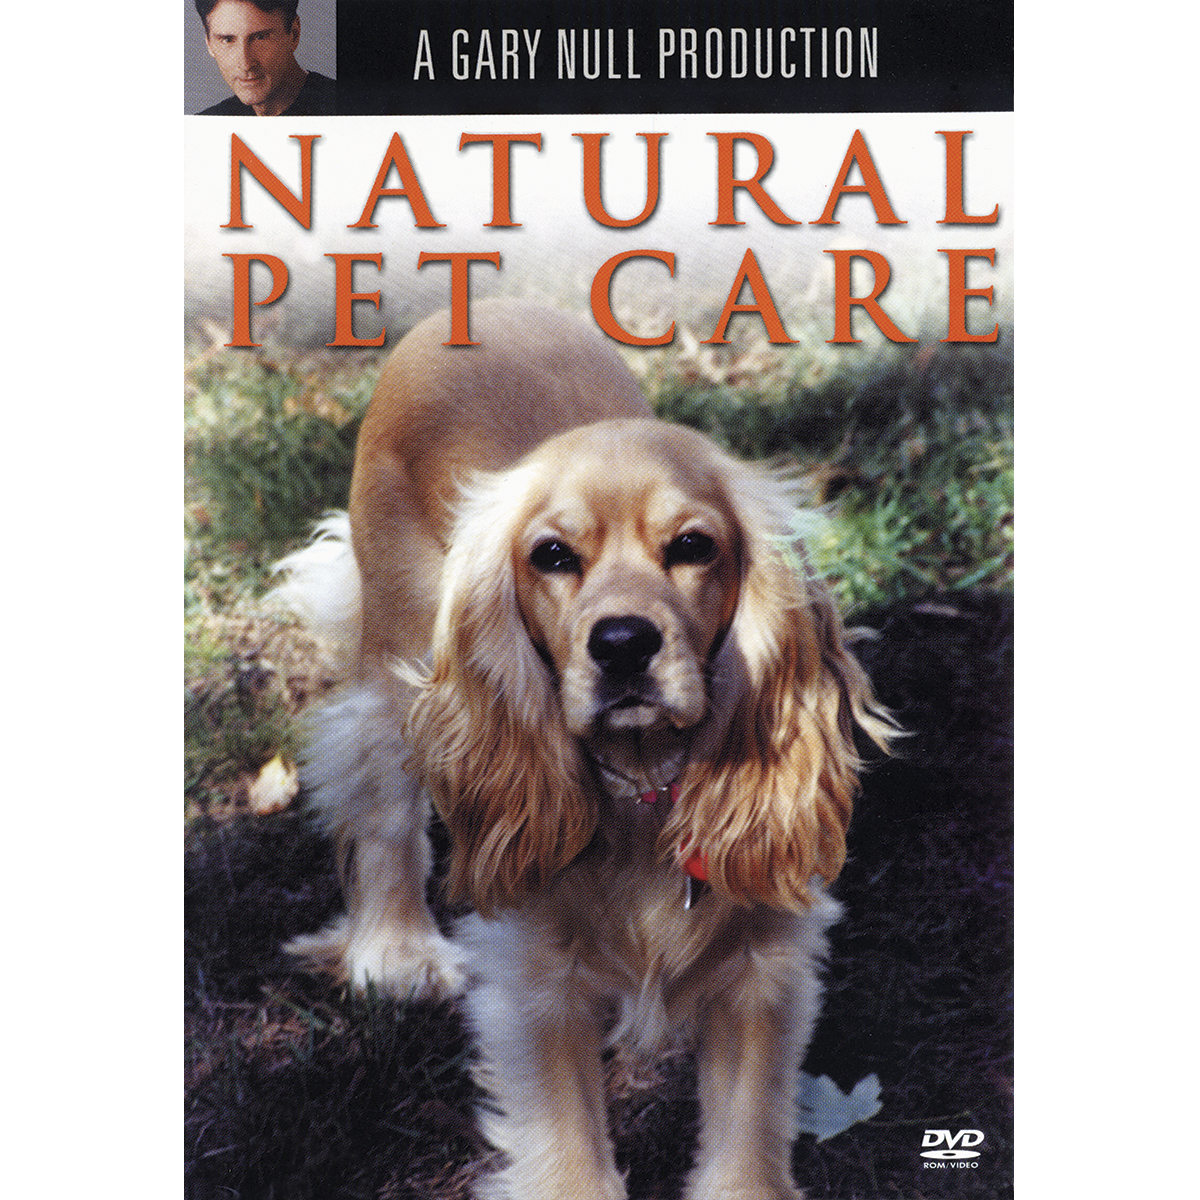 Natural-Pet-Care-DVD_c77e7724-ea71-44e1-bef2-4d8ea56a5f24.png